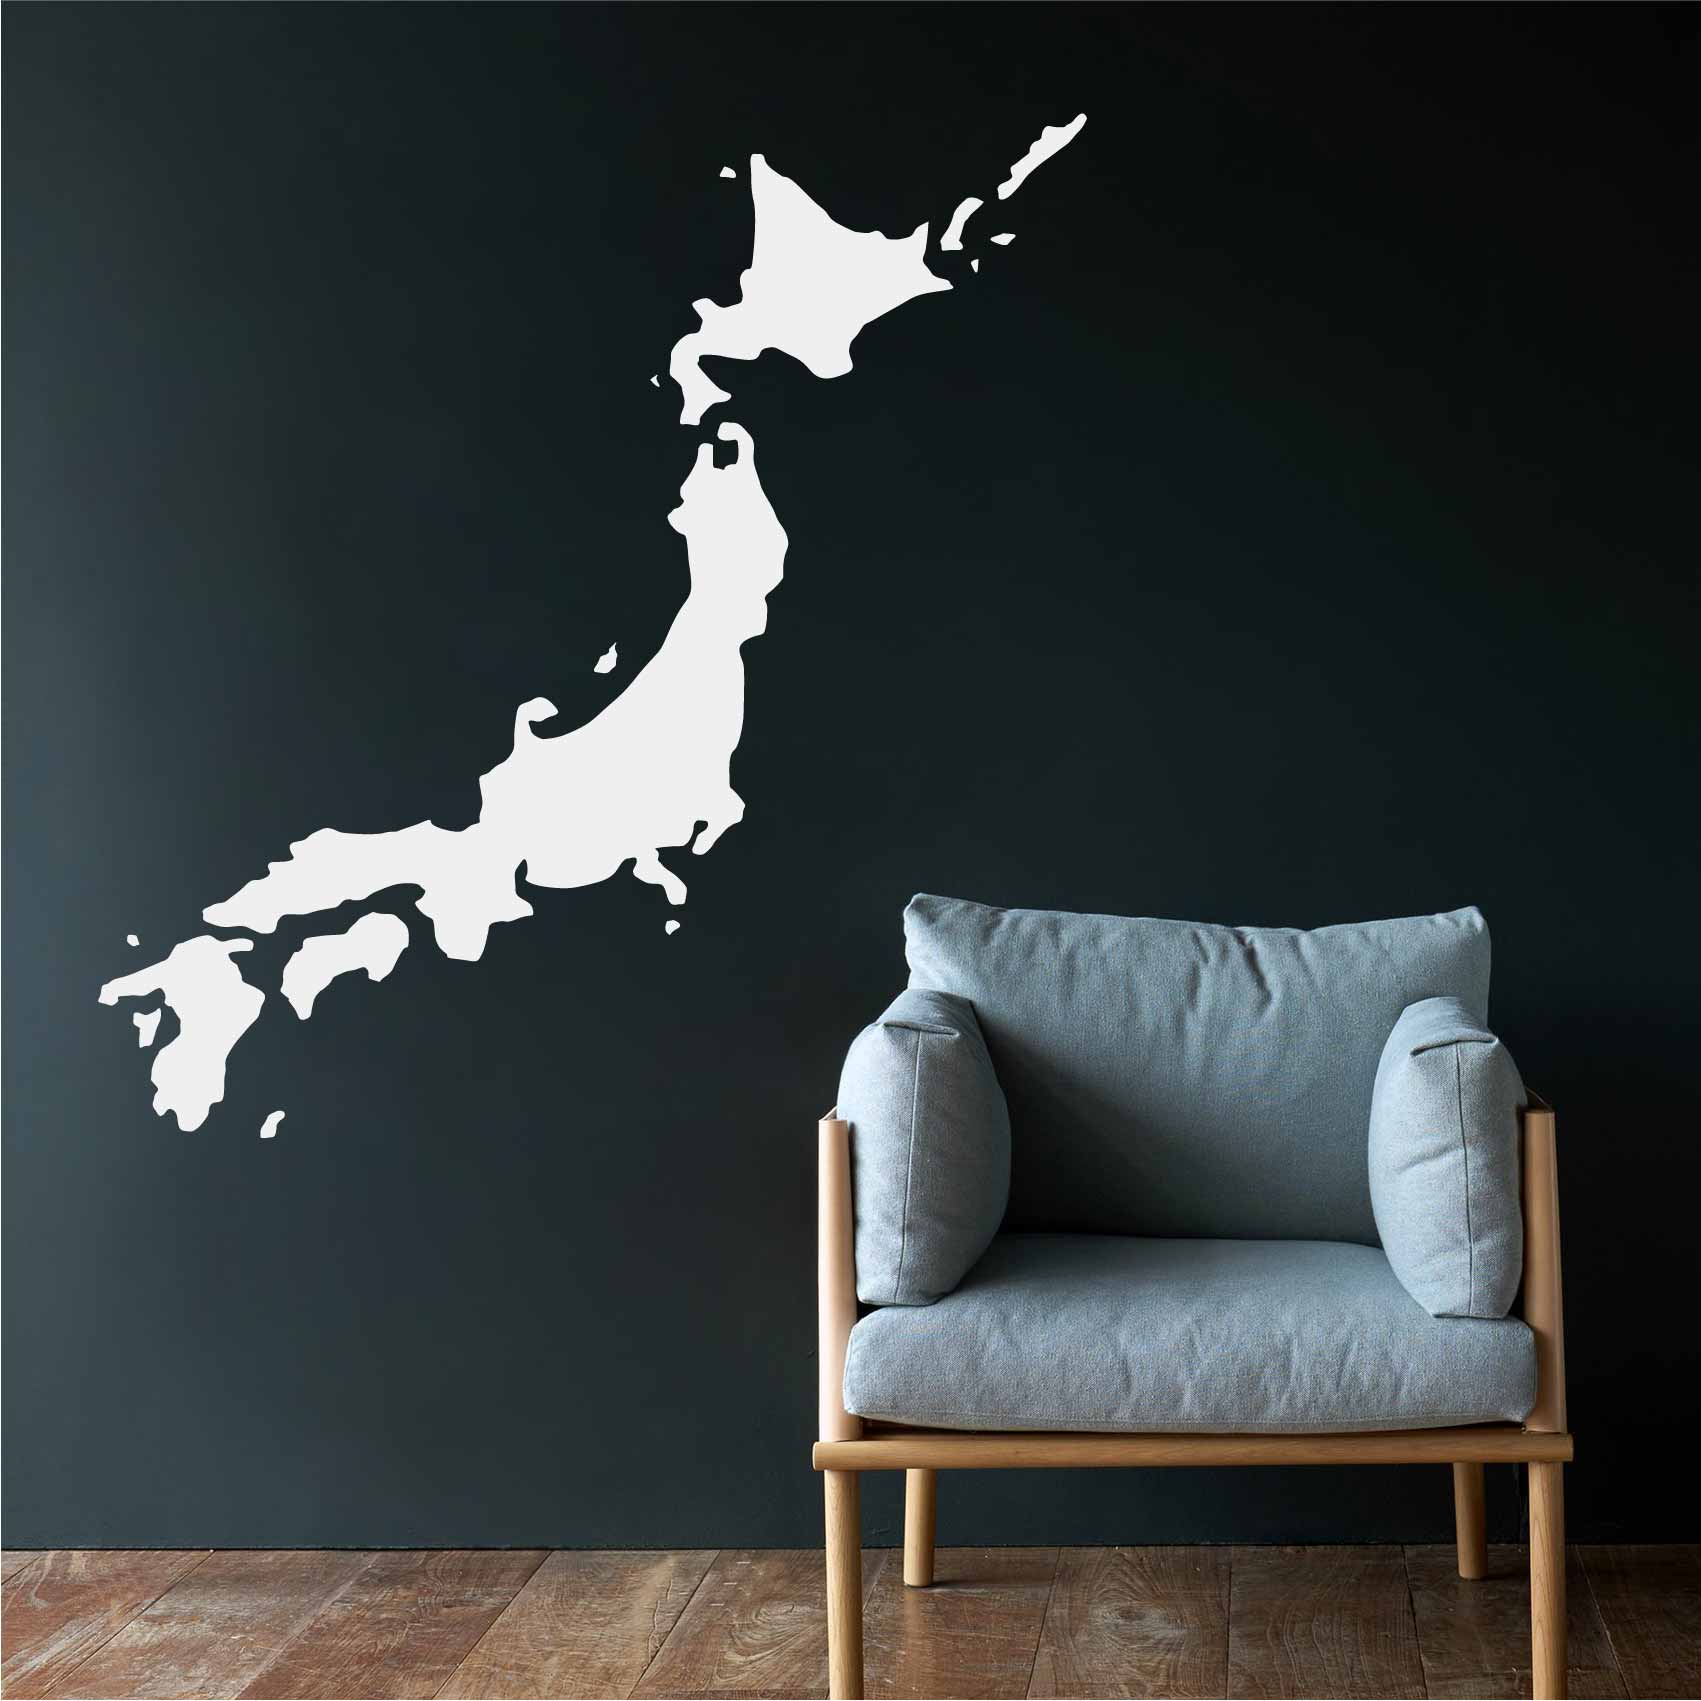 stickers-japon-ref30japon-stickers-muraux-japon-autocollant-deco-salon-chambre-voyage-travel-sticker-mural-japon-japan